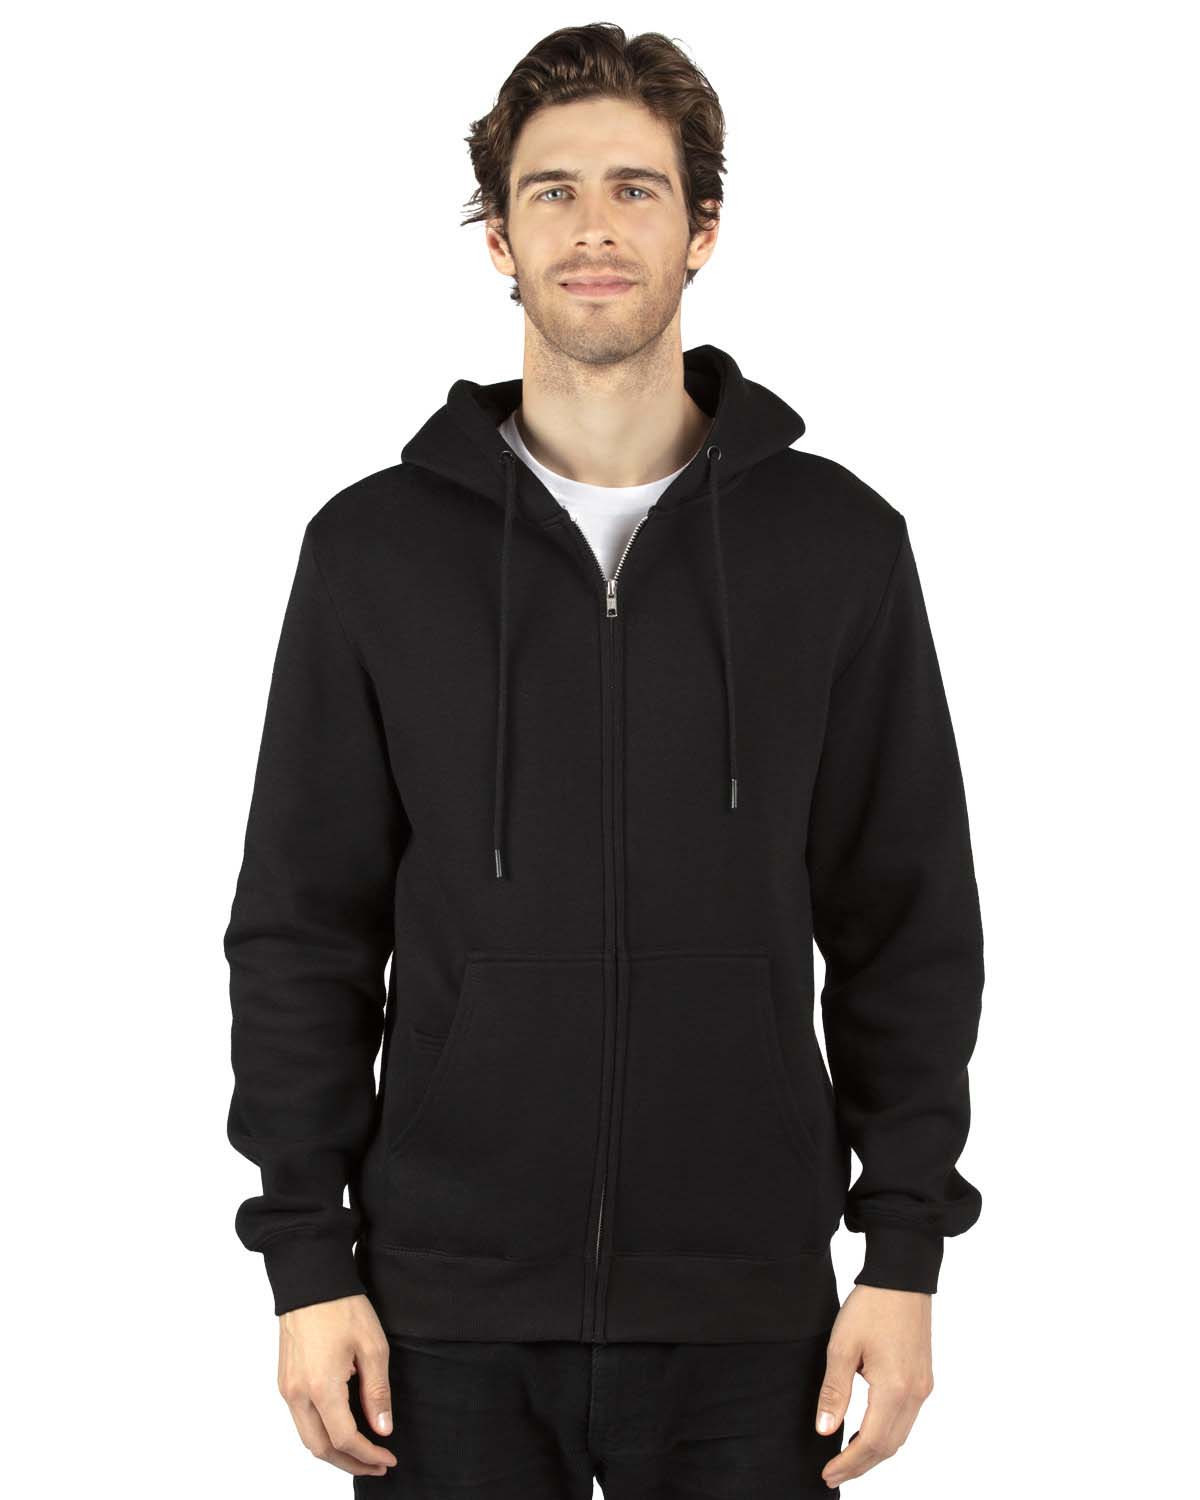 11 oz UltraSoft Fleece Hooded Sweatshirt